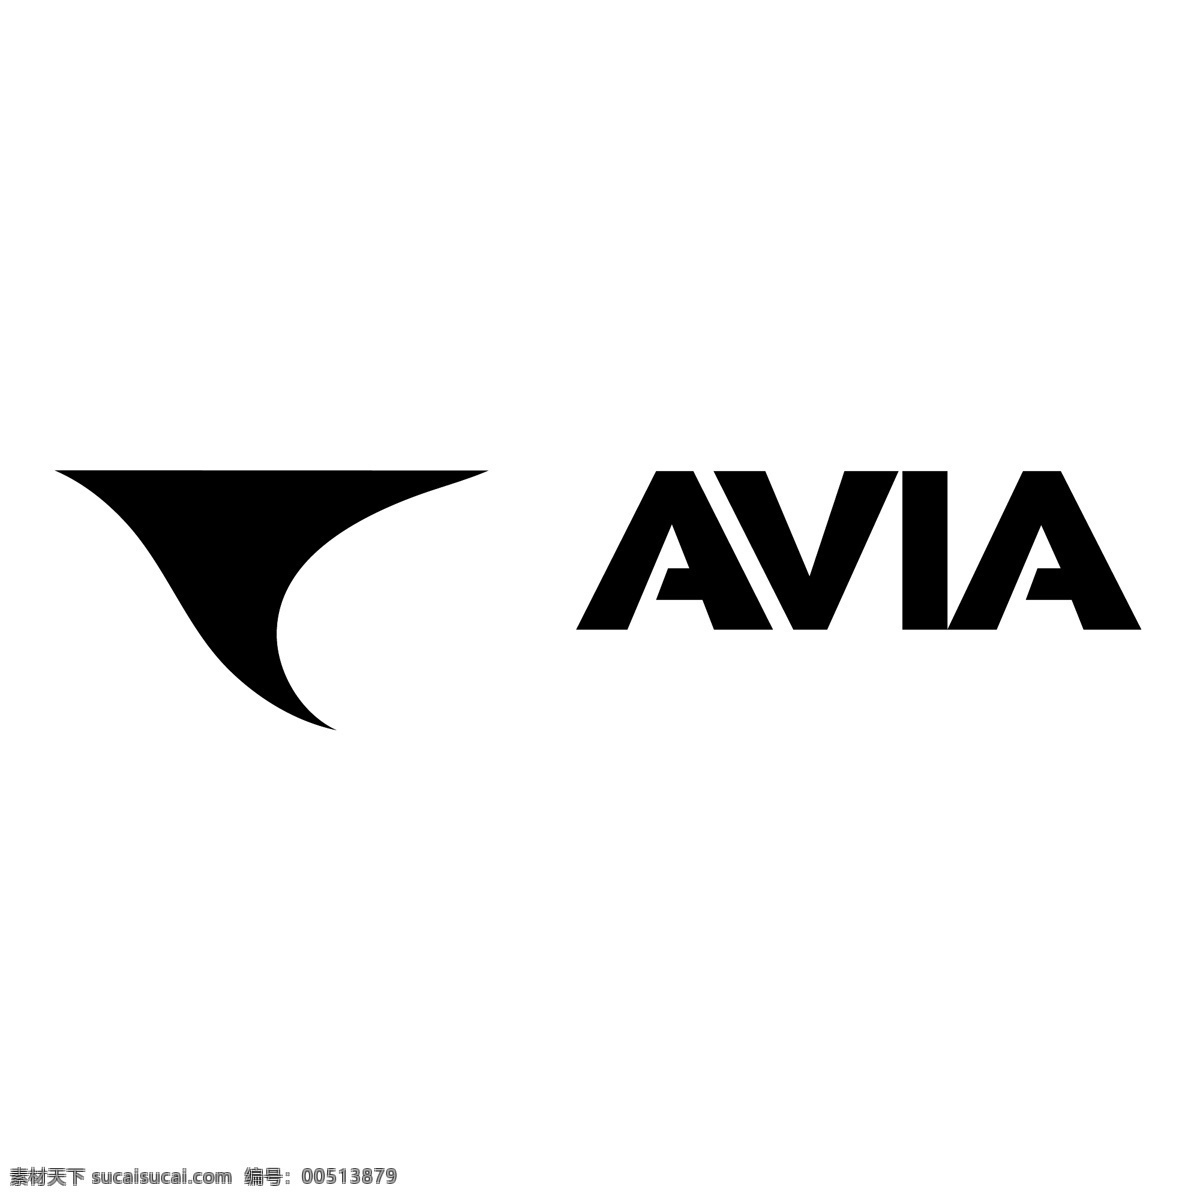 航空 航空标志 航空标志矢量 avia向量 向量 阿维亚 标志 矢量 该矢量标志 航空快递 载体 威 亚 矢量航空表示 该维德尼克 矢量图 建筑家居